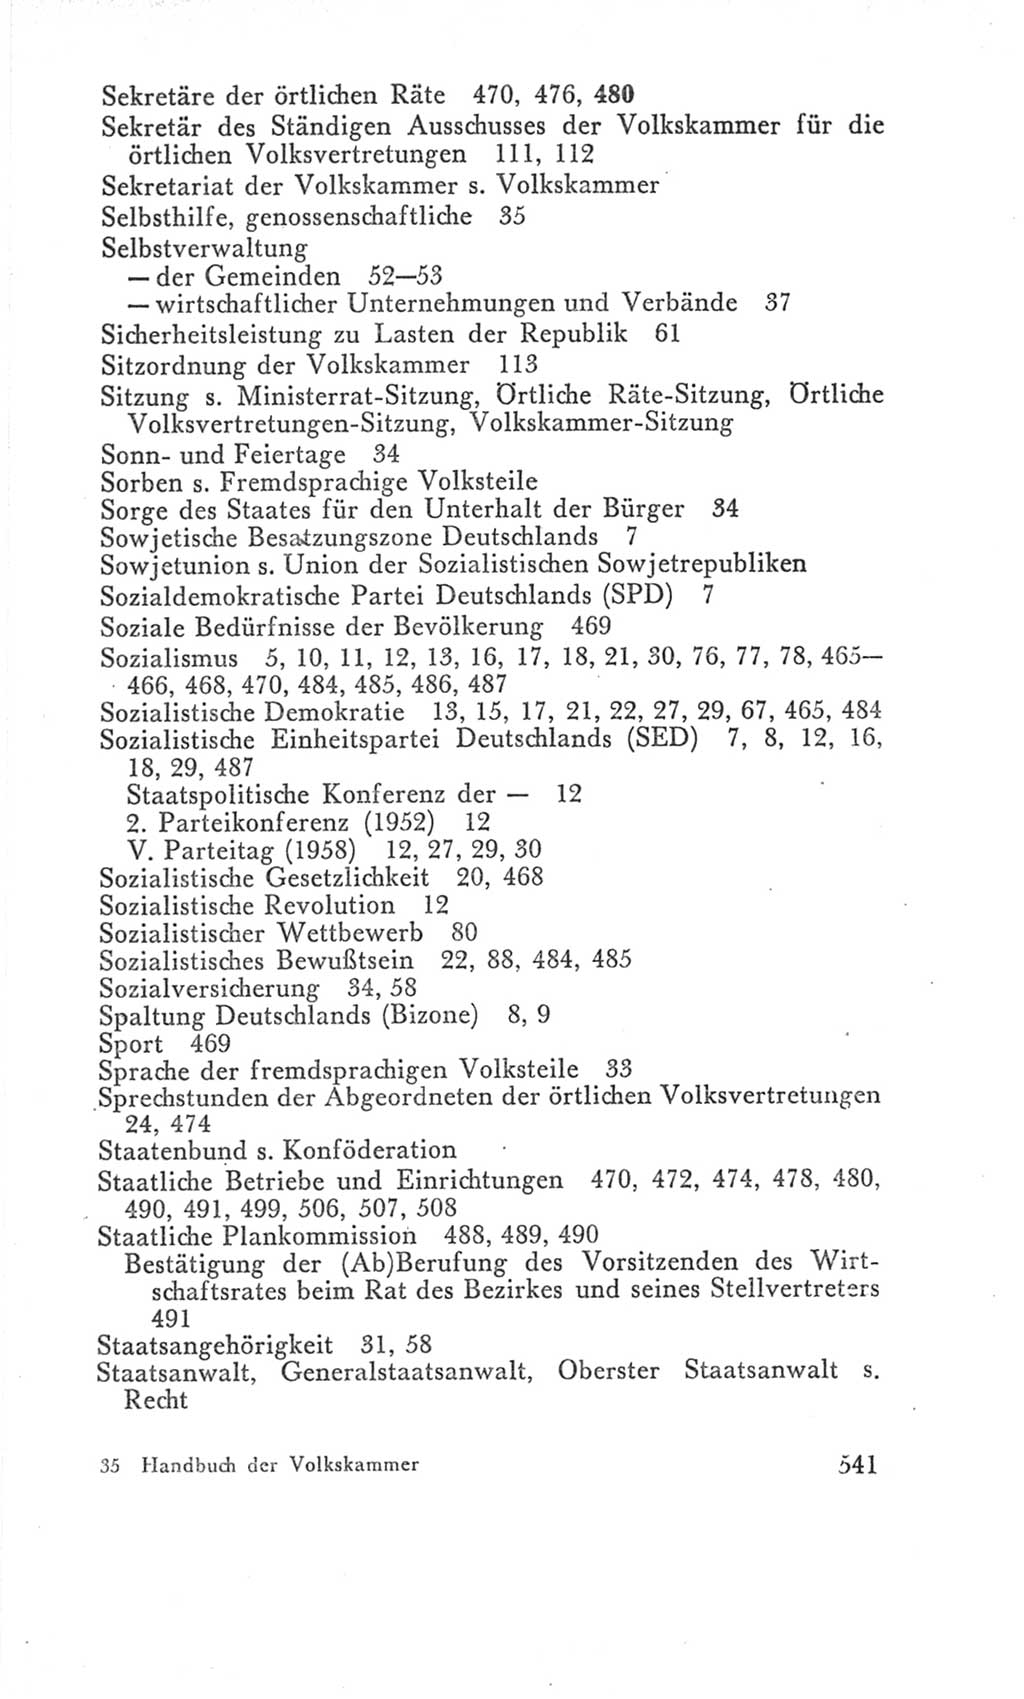 Handbuch der Volkskammer (VK) der Deutschen Demokratischen Republik (DDR), 3. Wahlperiode 1958-1963, Seite 541 (Hdb. VK. DDR 3. WP. 1958-1963, S. 541)